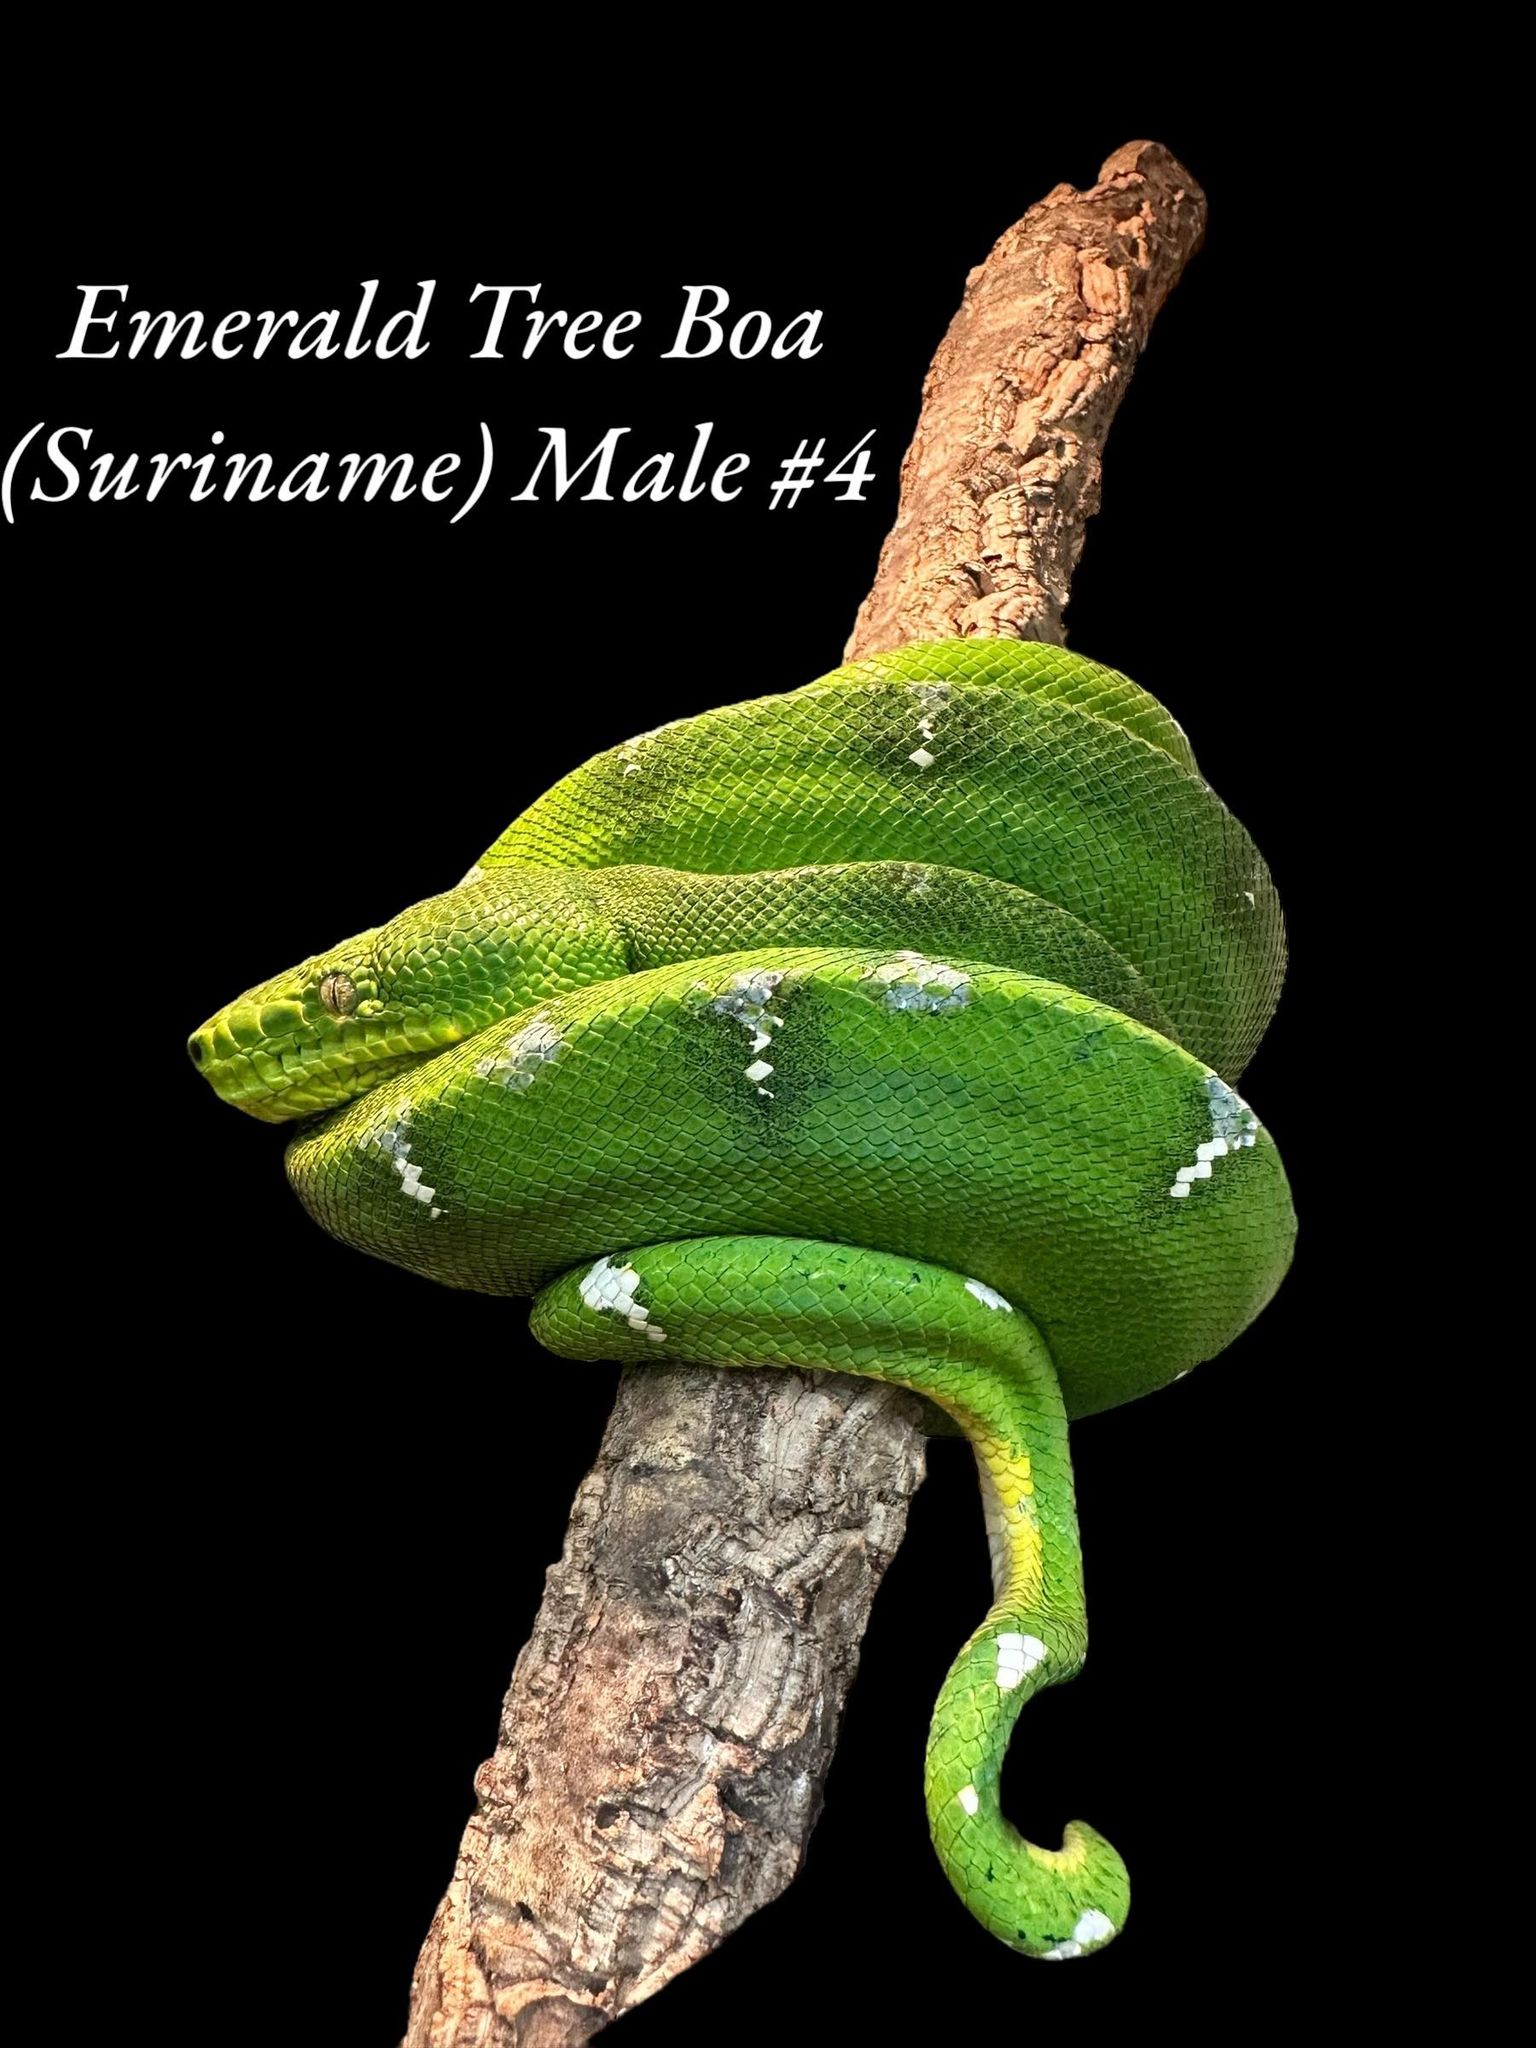 Emerald Tree Boa (Suriname)